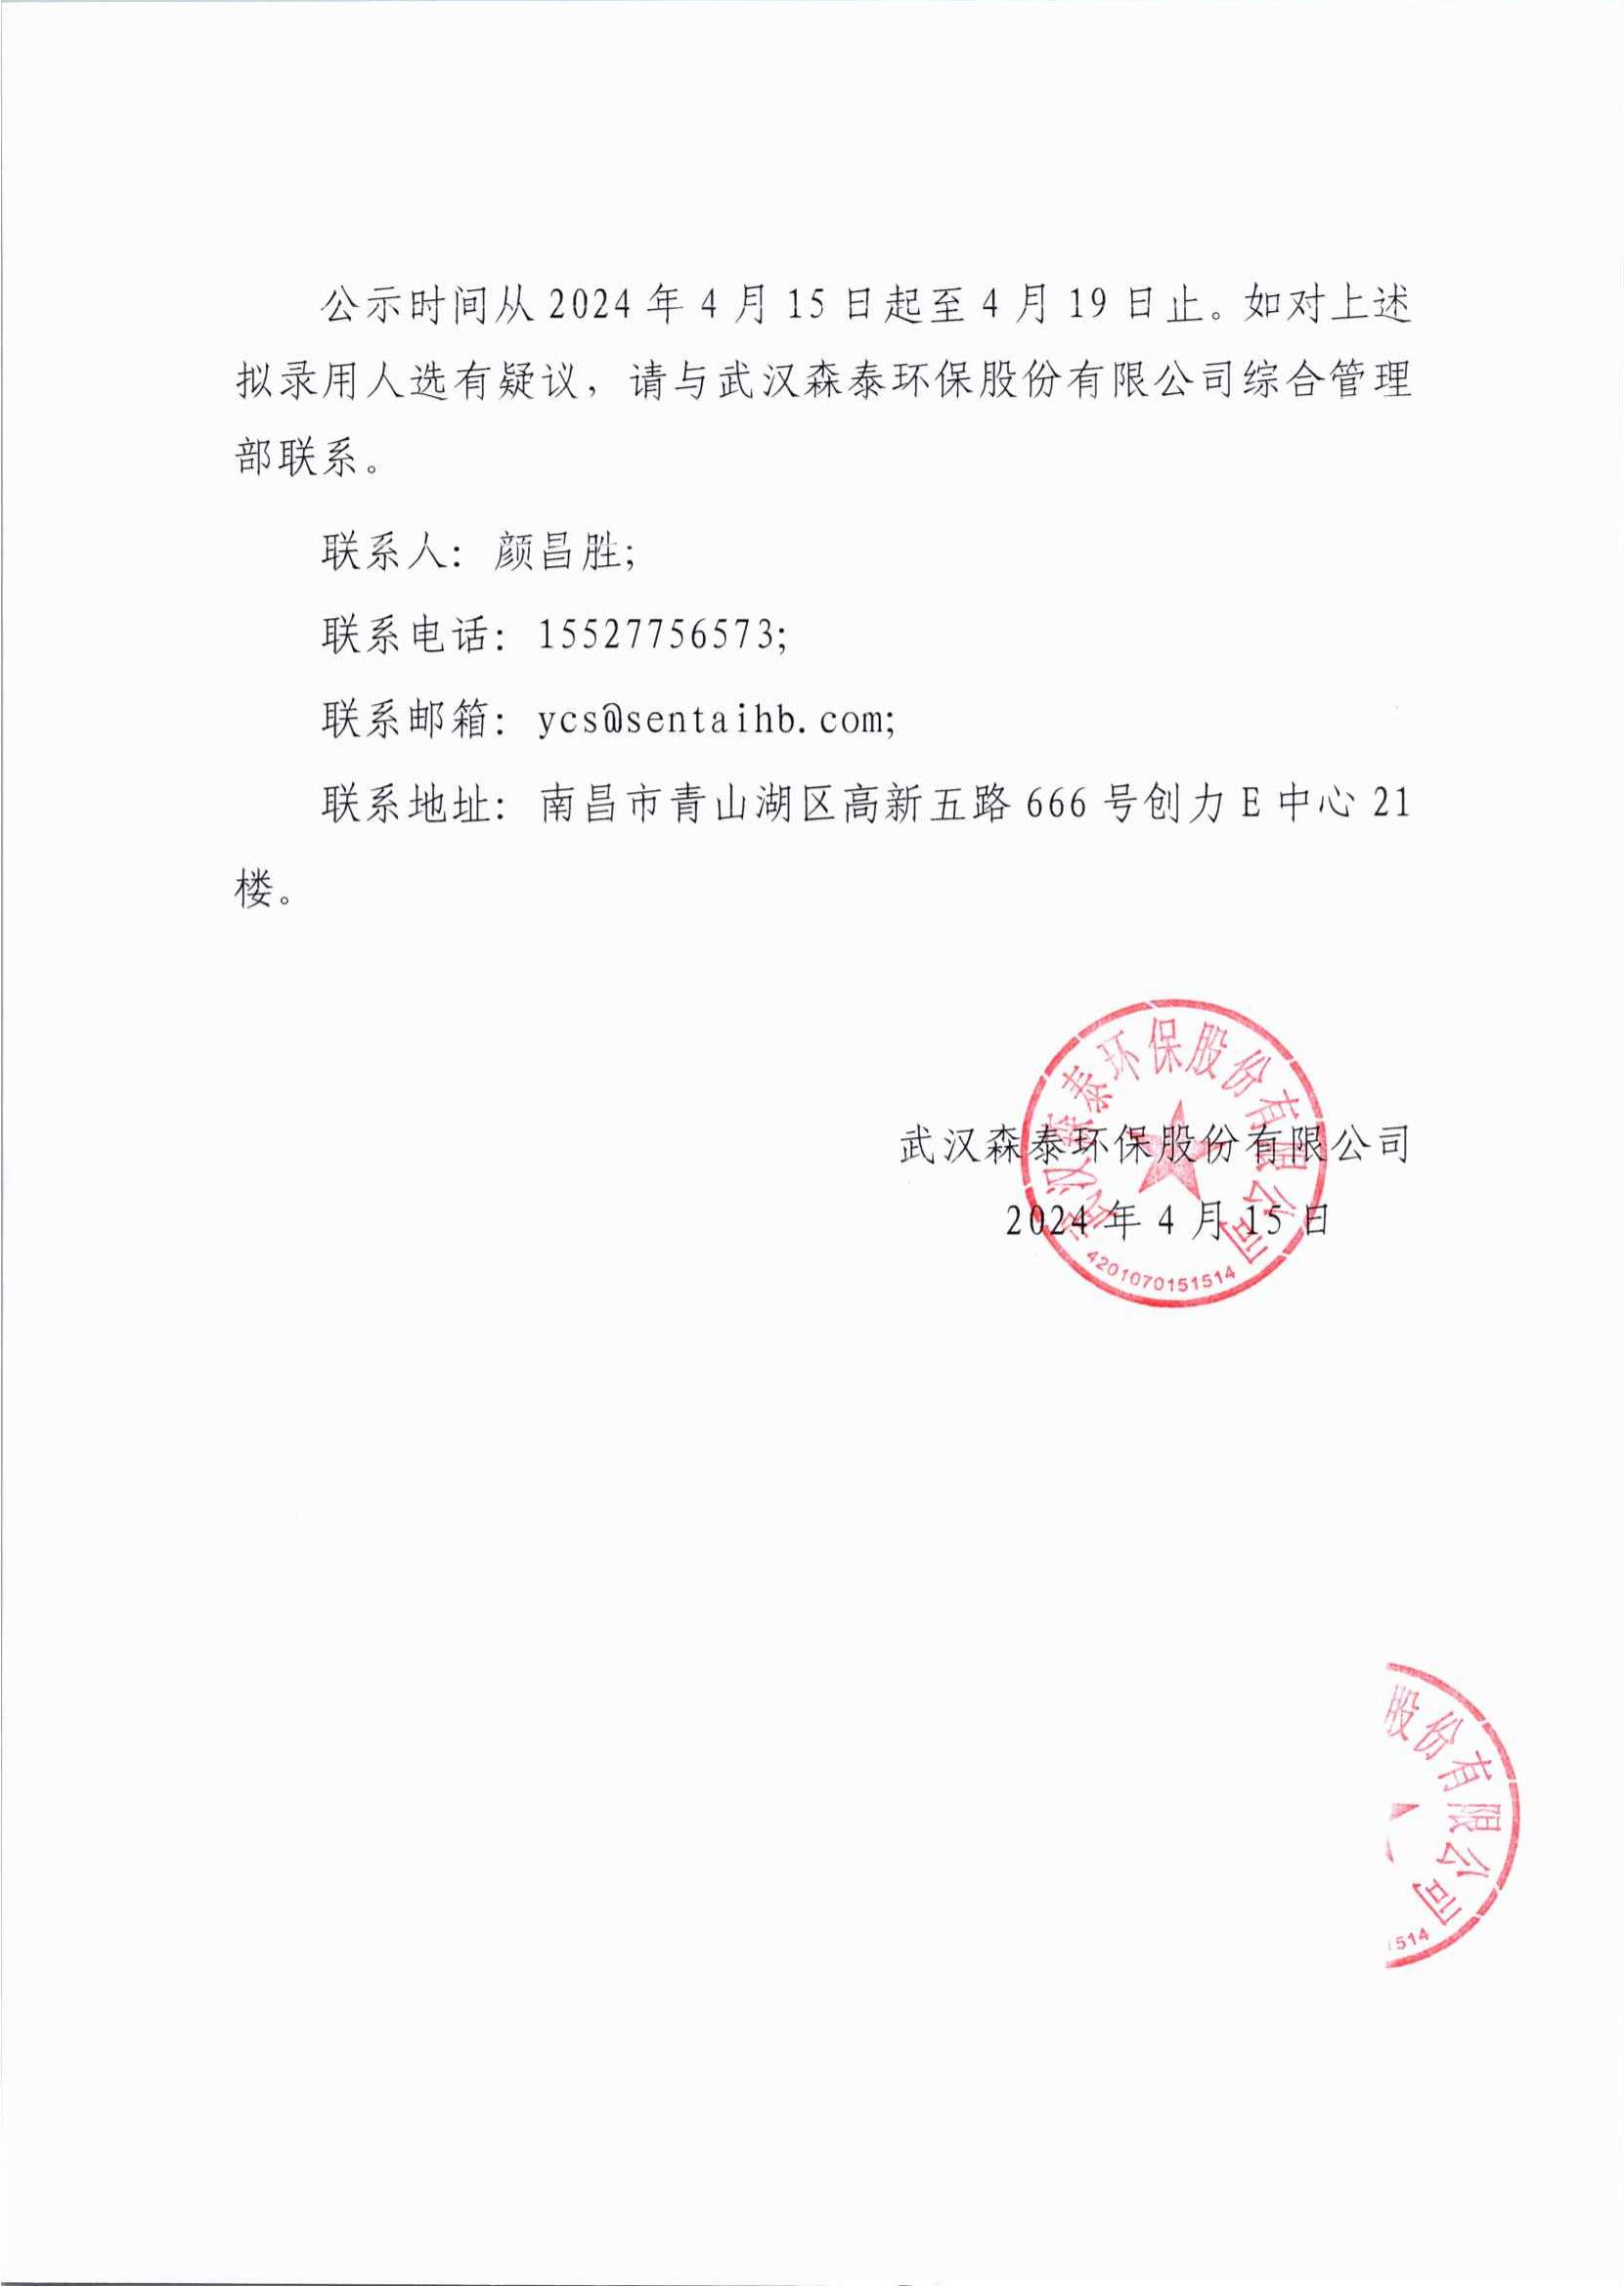 武汉森泰环保股份有限公司公开选聘拟录用人员公示_01.jpg